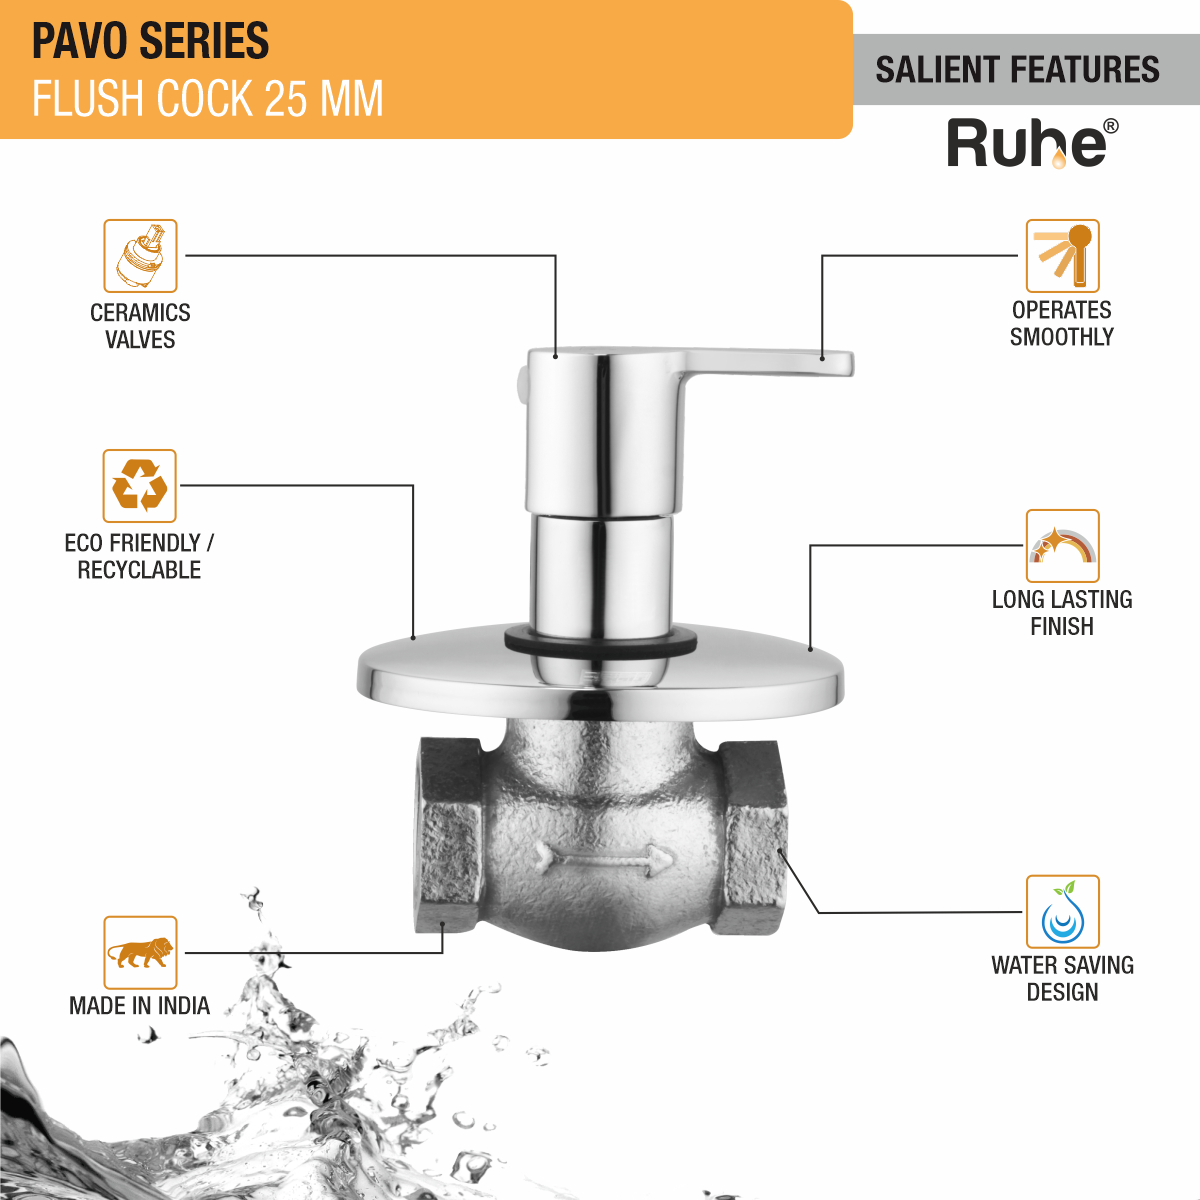 Pavo Flush Valve Brass Faucet (25mm) features